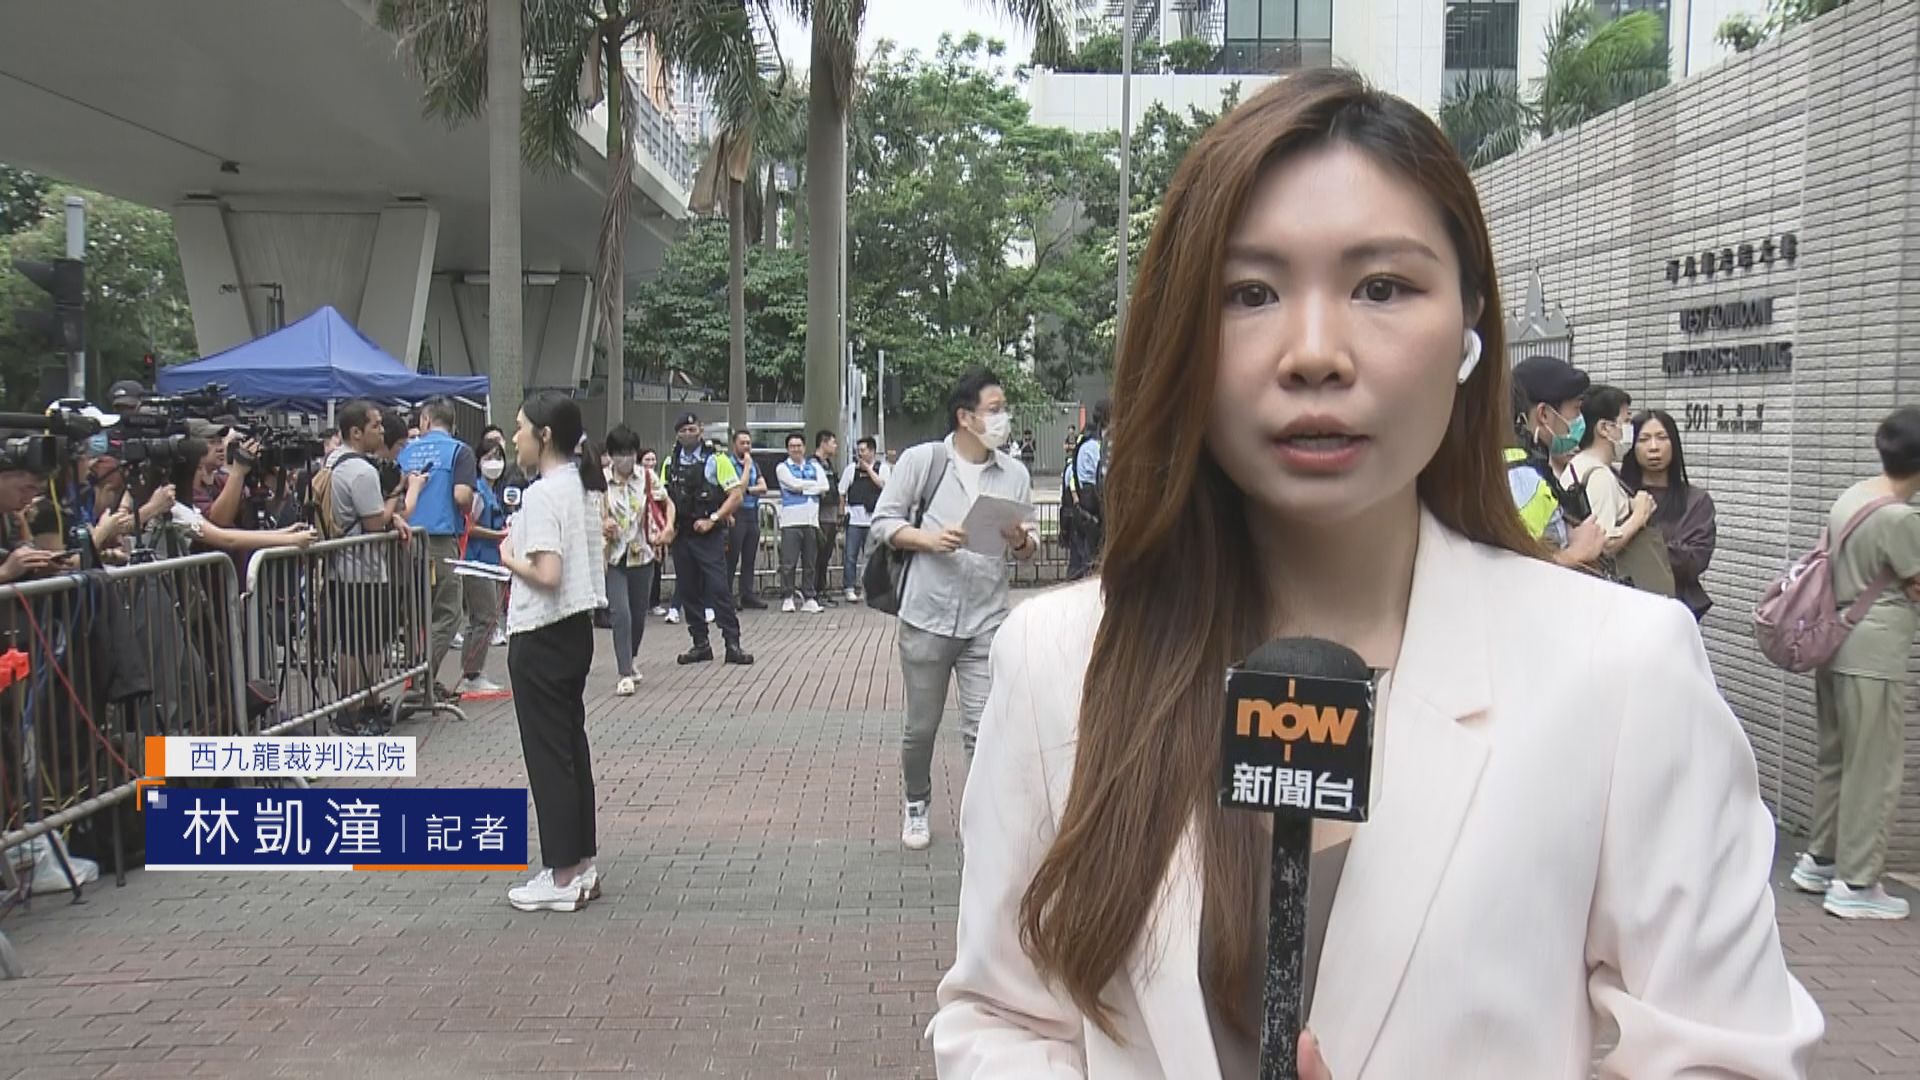 【記者直擊】民主派初選案將裁決 市民陸續進入西九龍法院旁聽